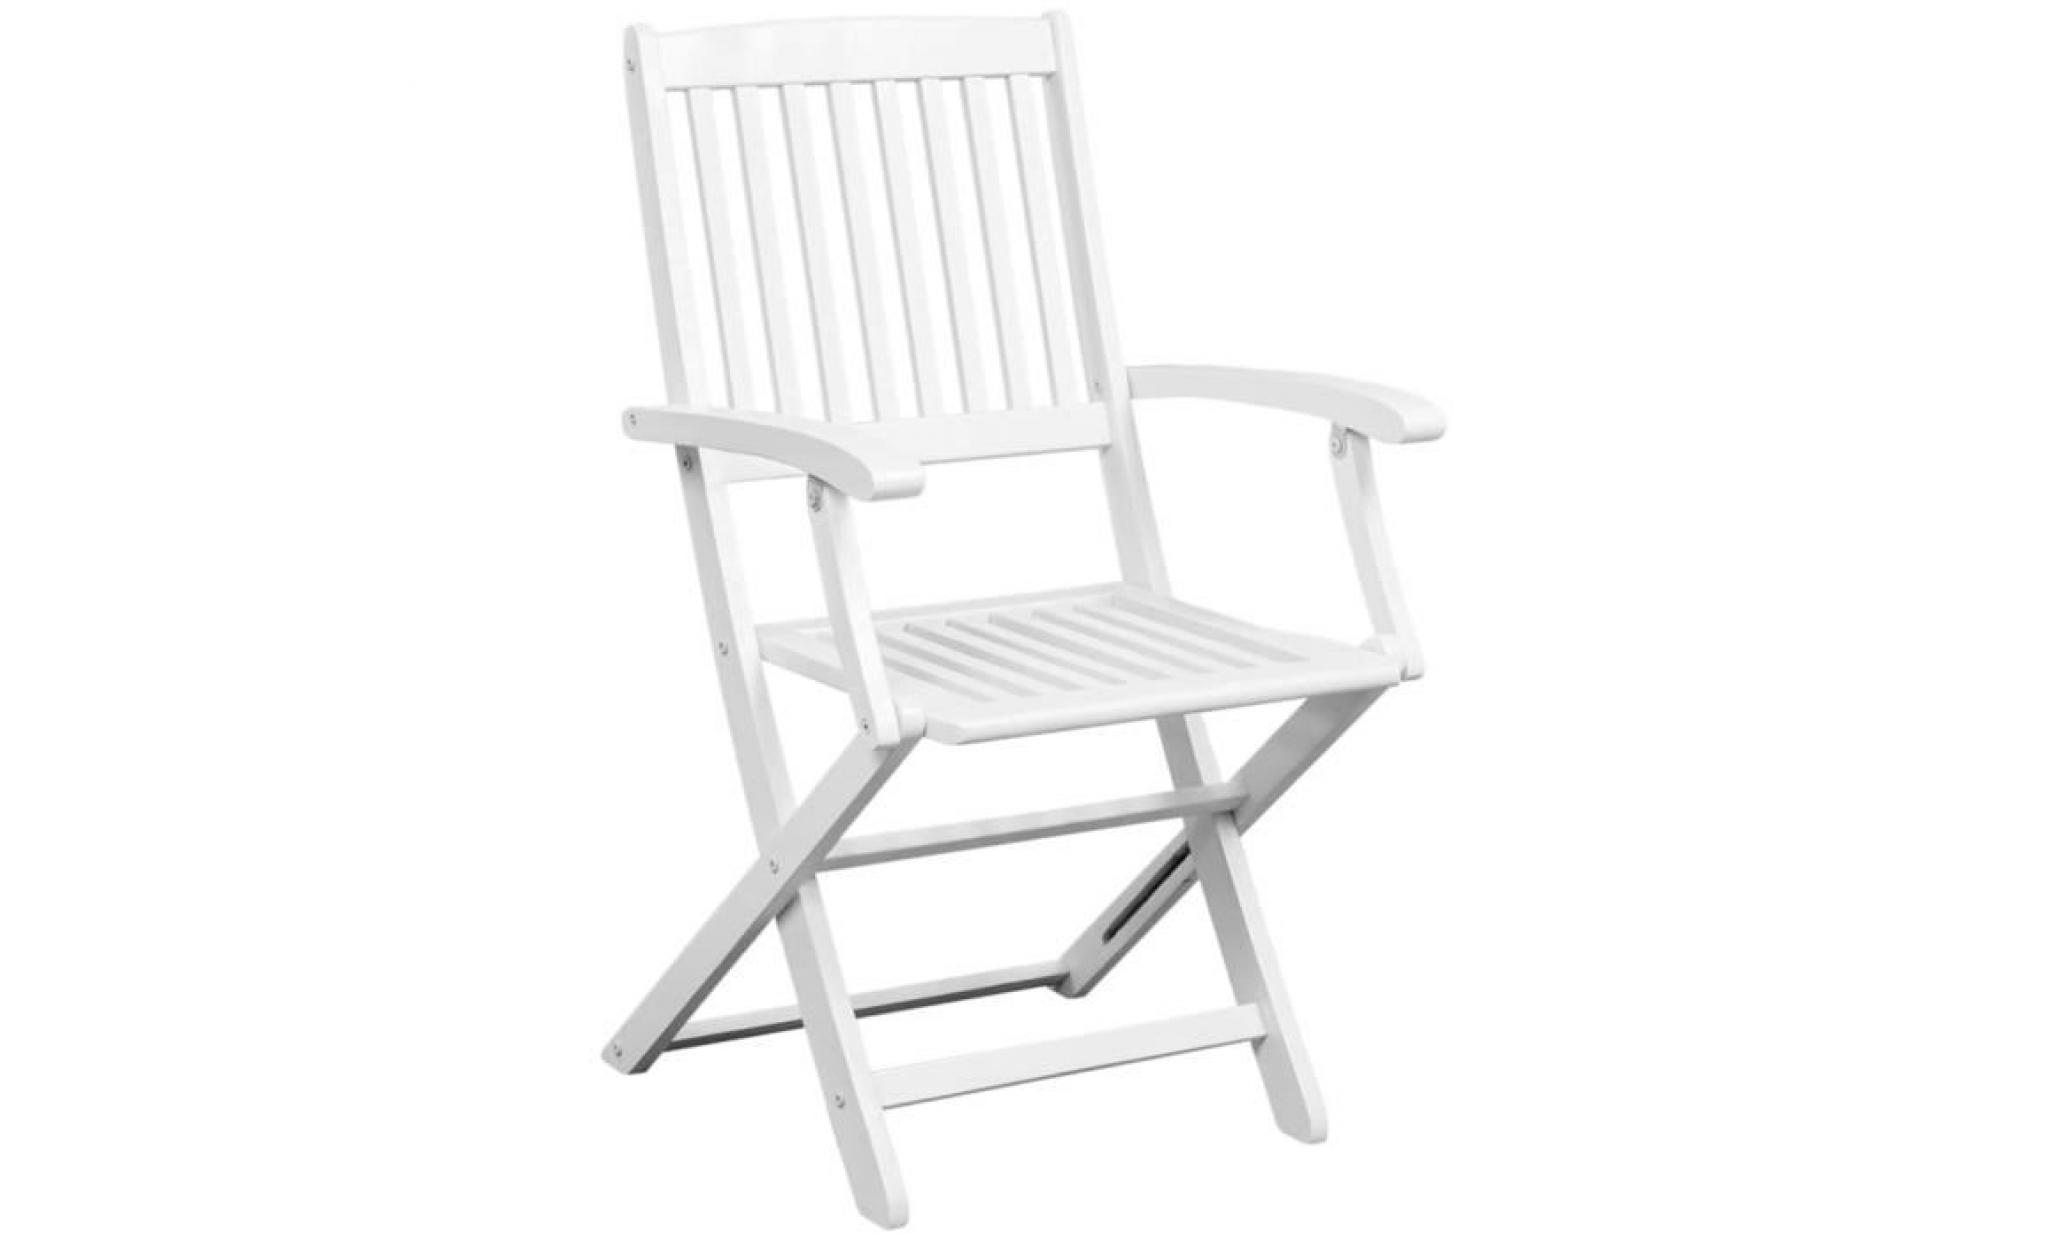 2 pcs chaise pliante en bois d'acacia blanc 51 x 56 x 92 cm pas cher